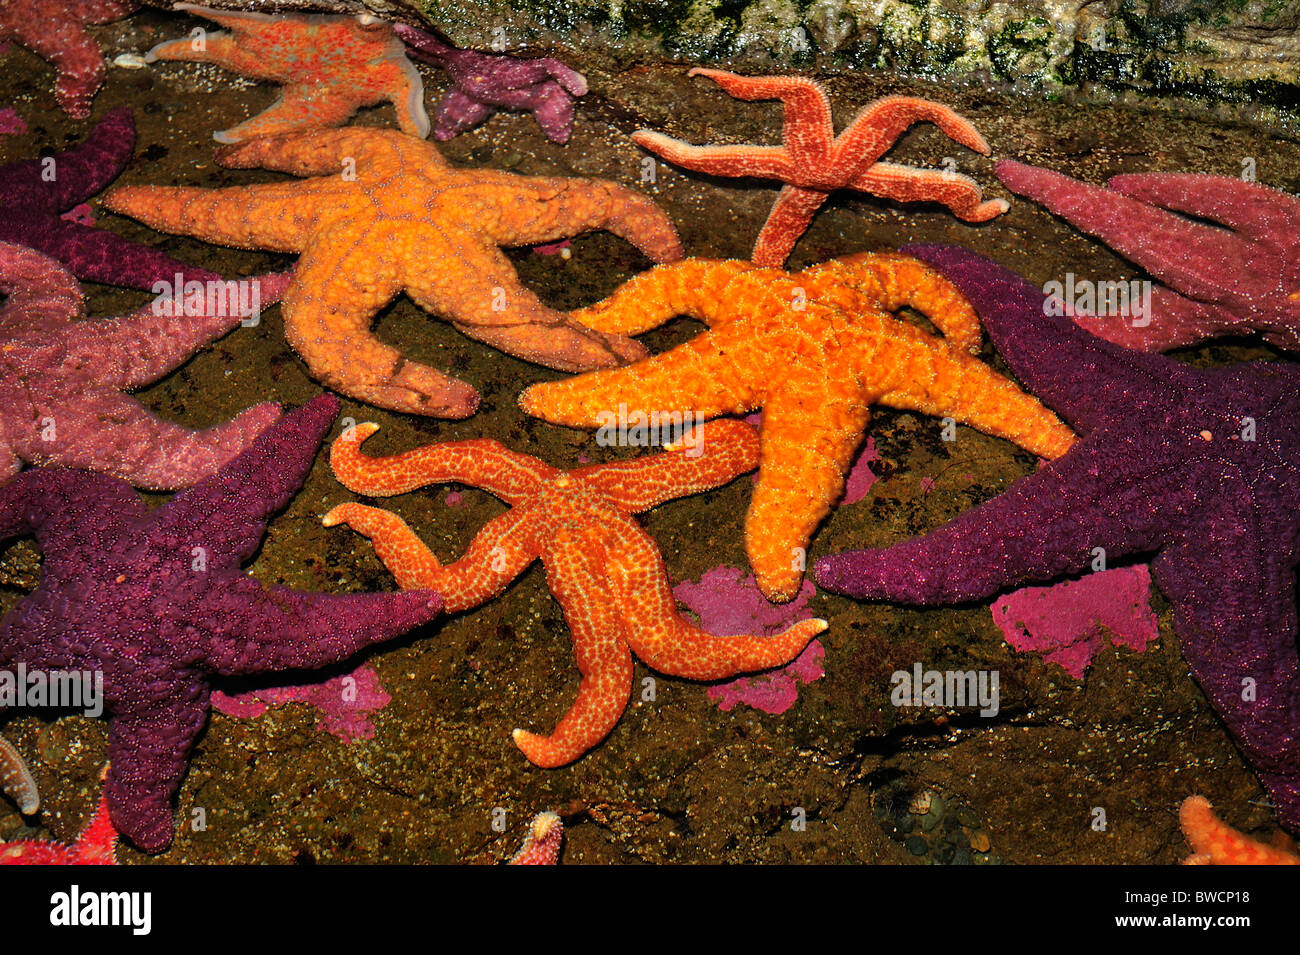 Ocre, estrellas de mar Pisaster ochraceus, estrella de mar, Arco Iris y Orthasterias koehleri, cautiva Foto de stock